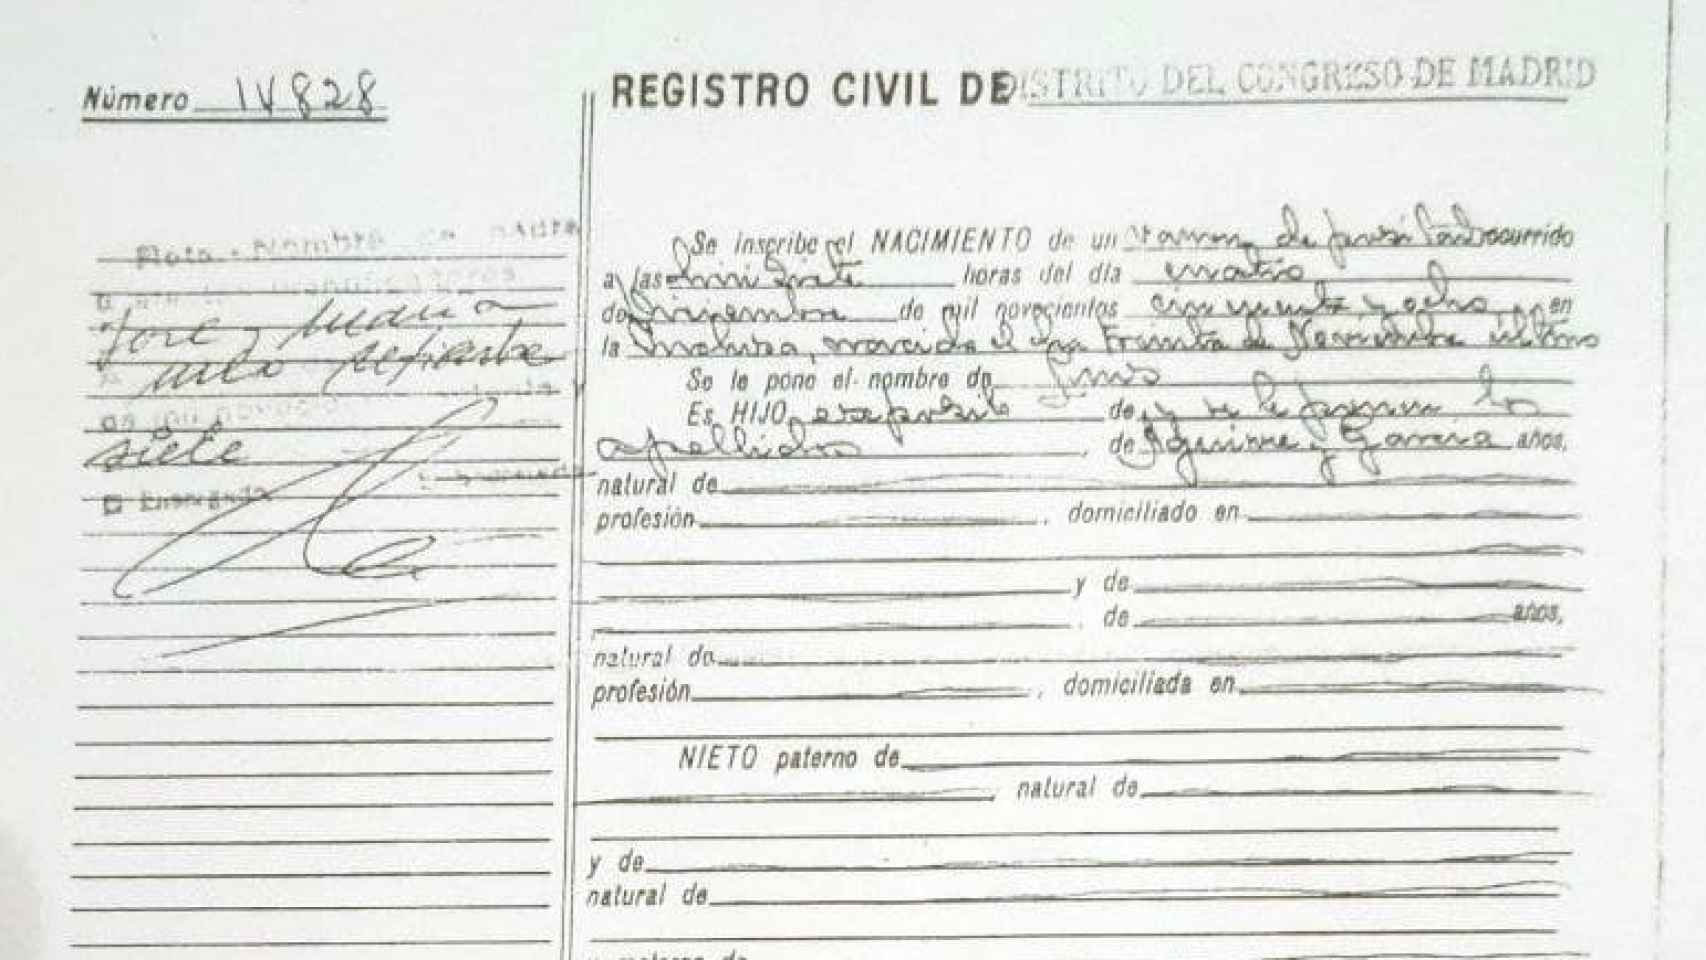 El acta de nacimiento de Luis Aguirre en el registro civil de Madrid.